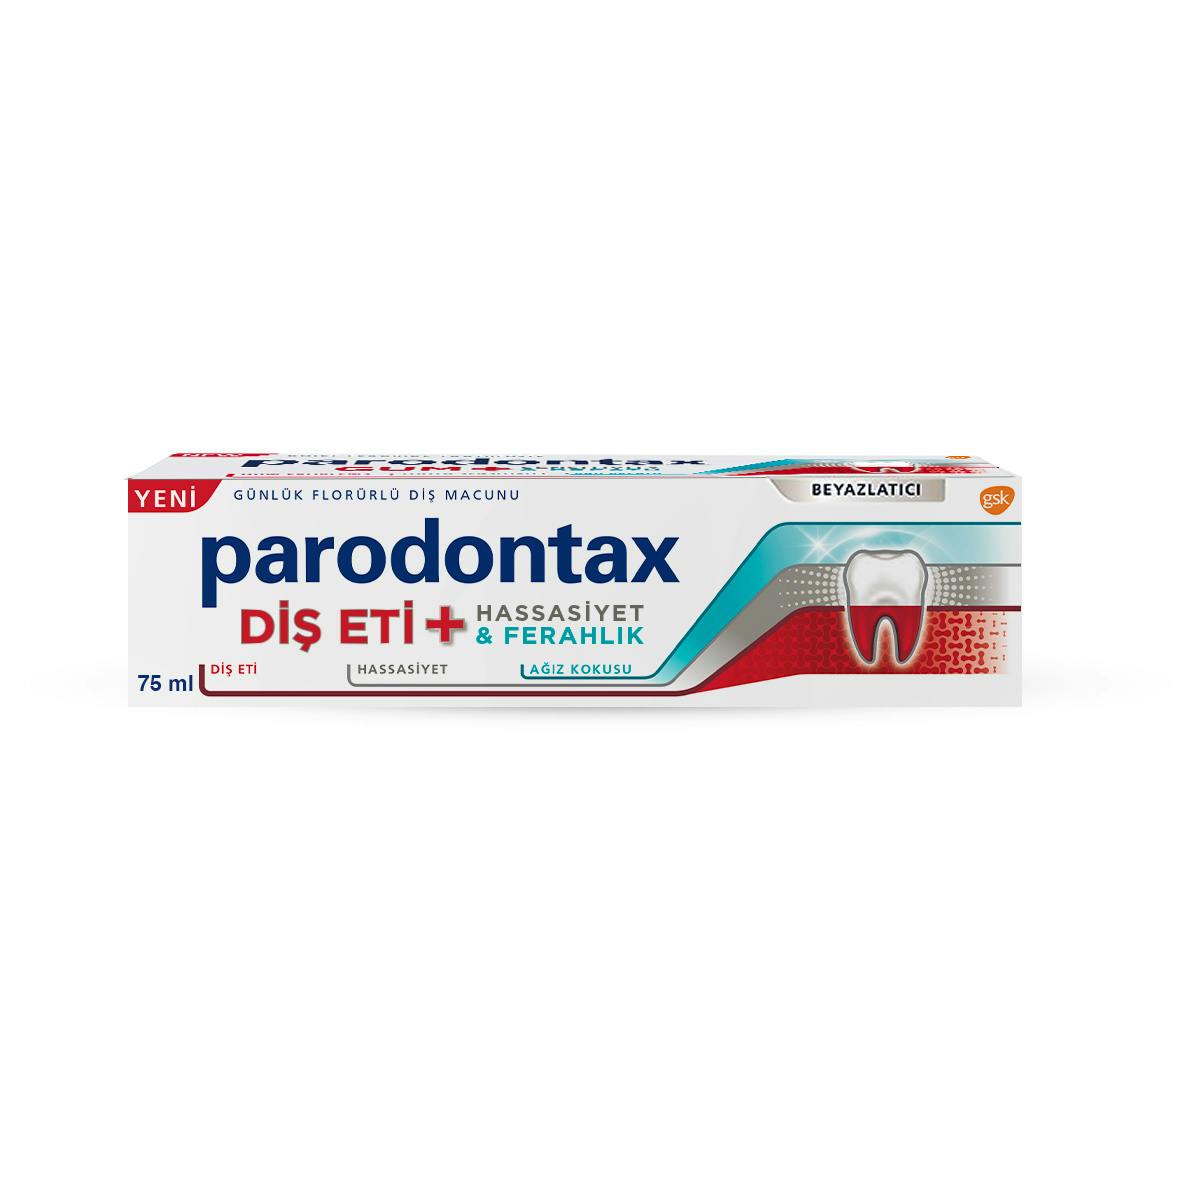 parodontax diş eti+ hassasiyeti & ferahlık diş macunu